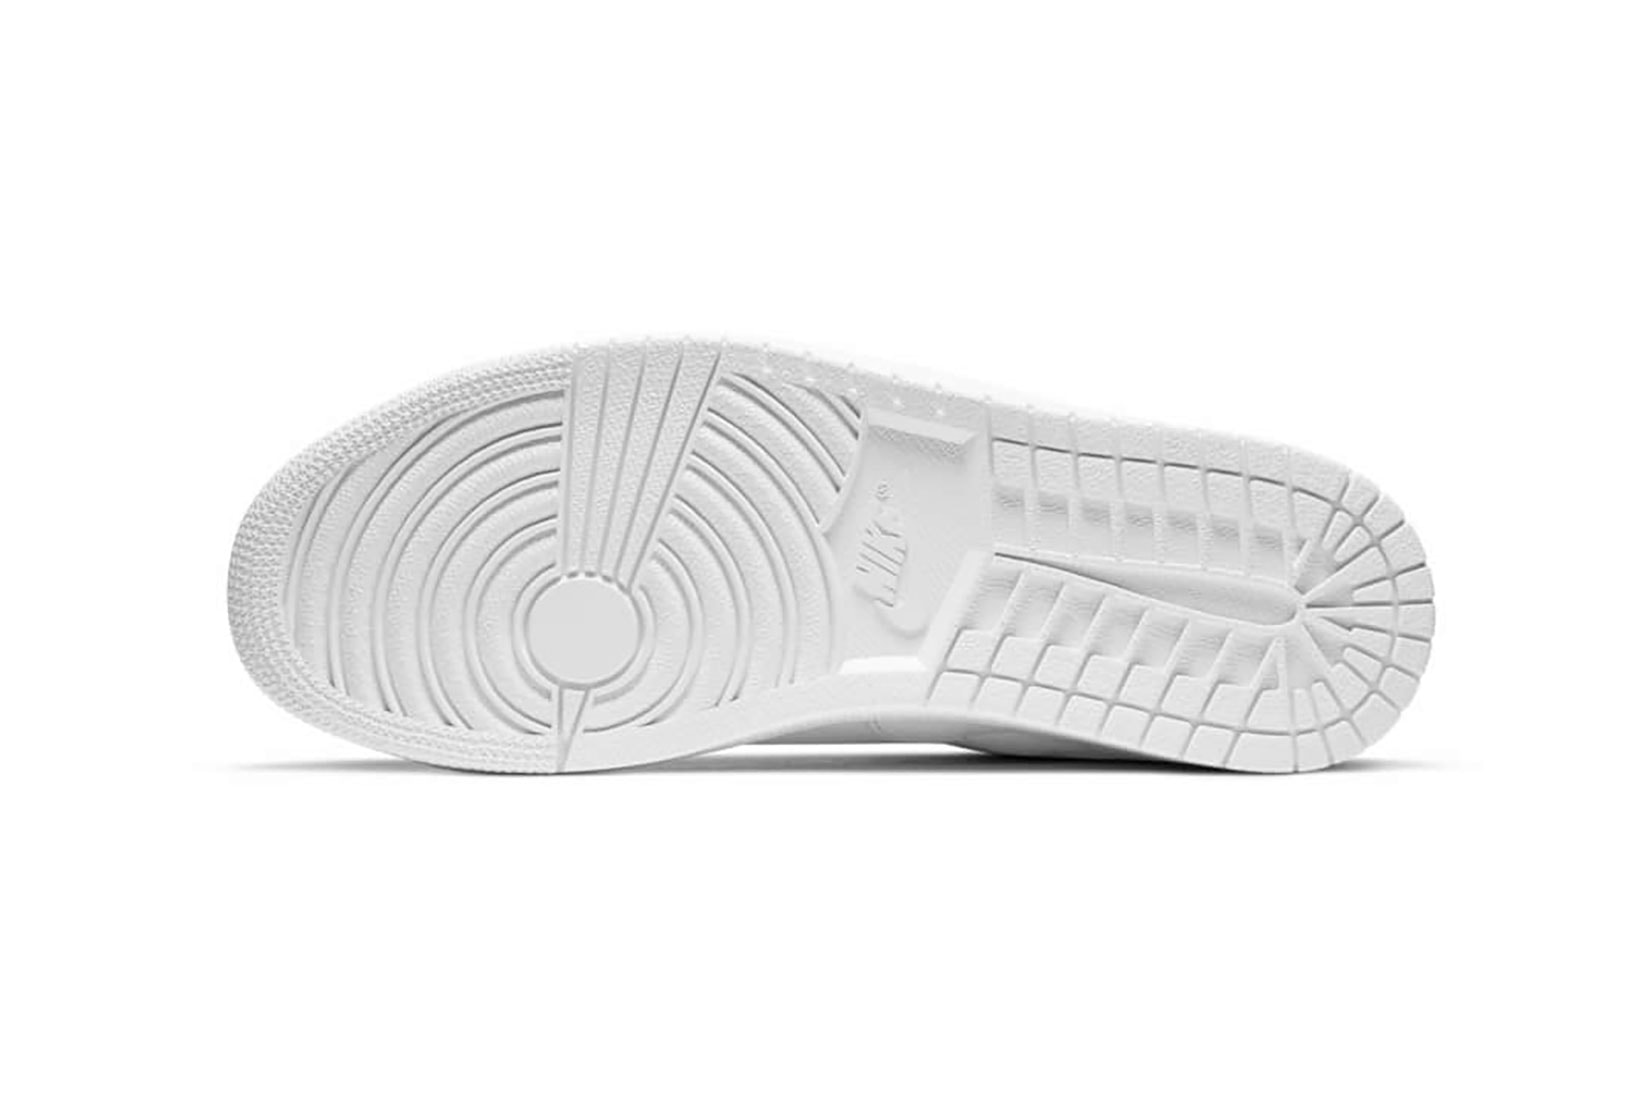 nike air jordan 1 centre court sneakers white colorway shoes footwear sneakerhead